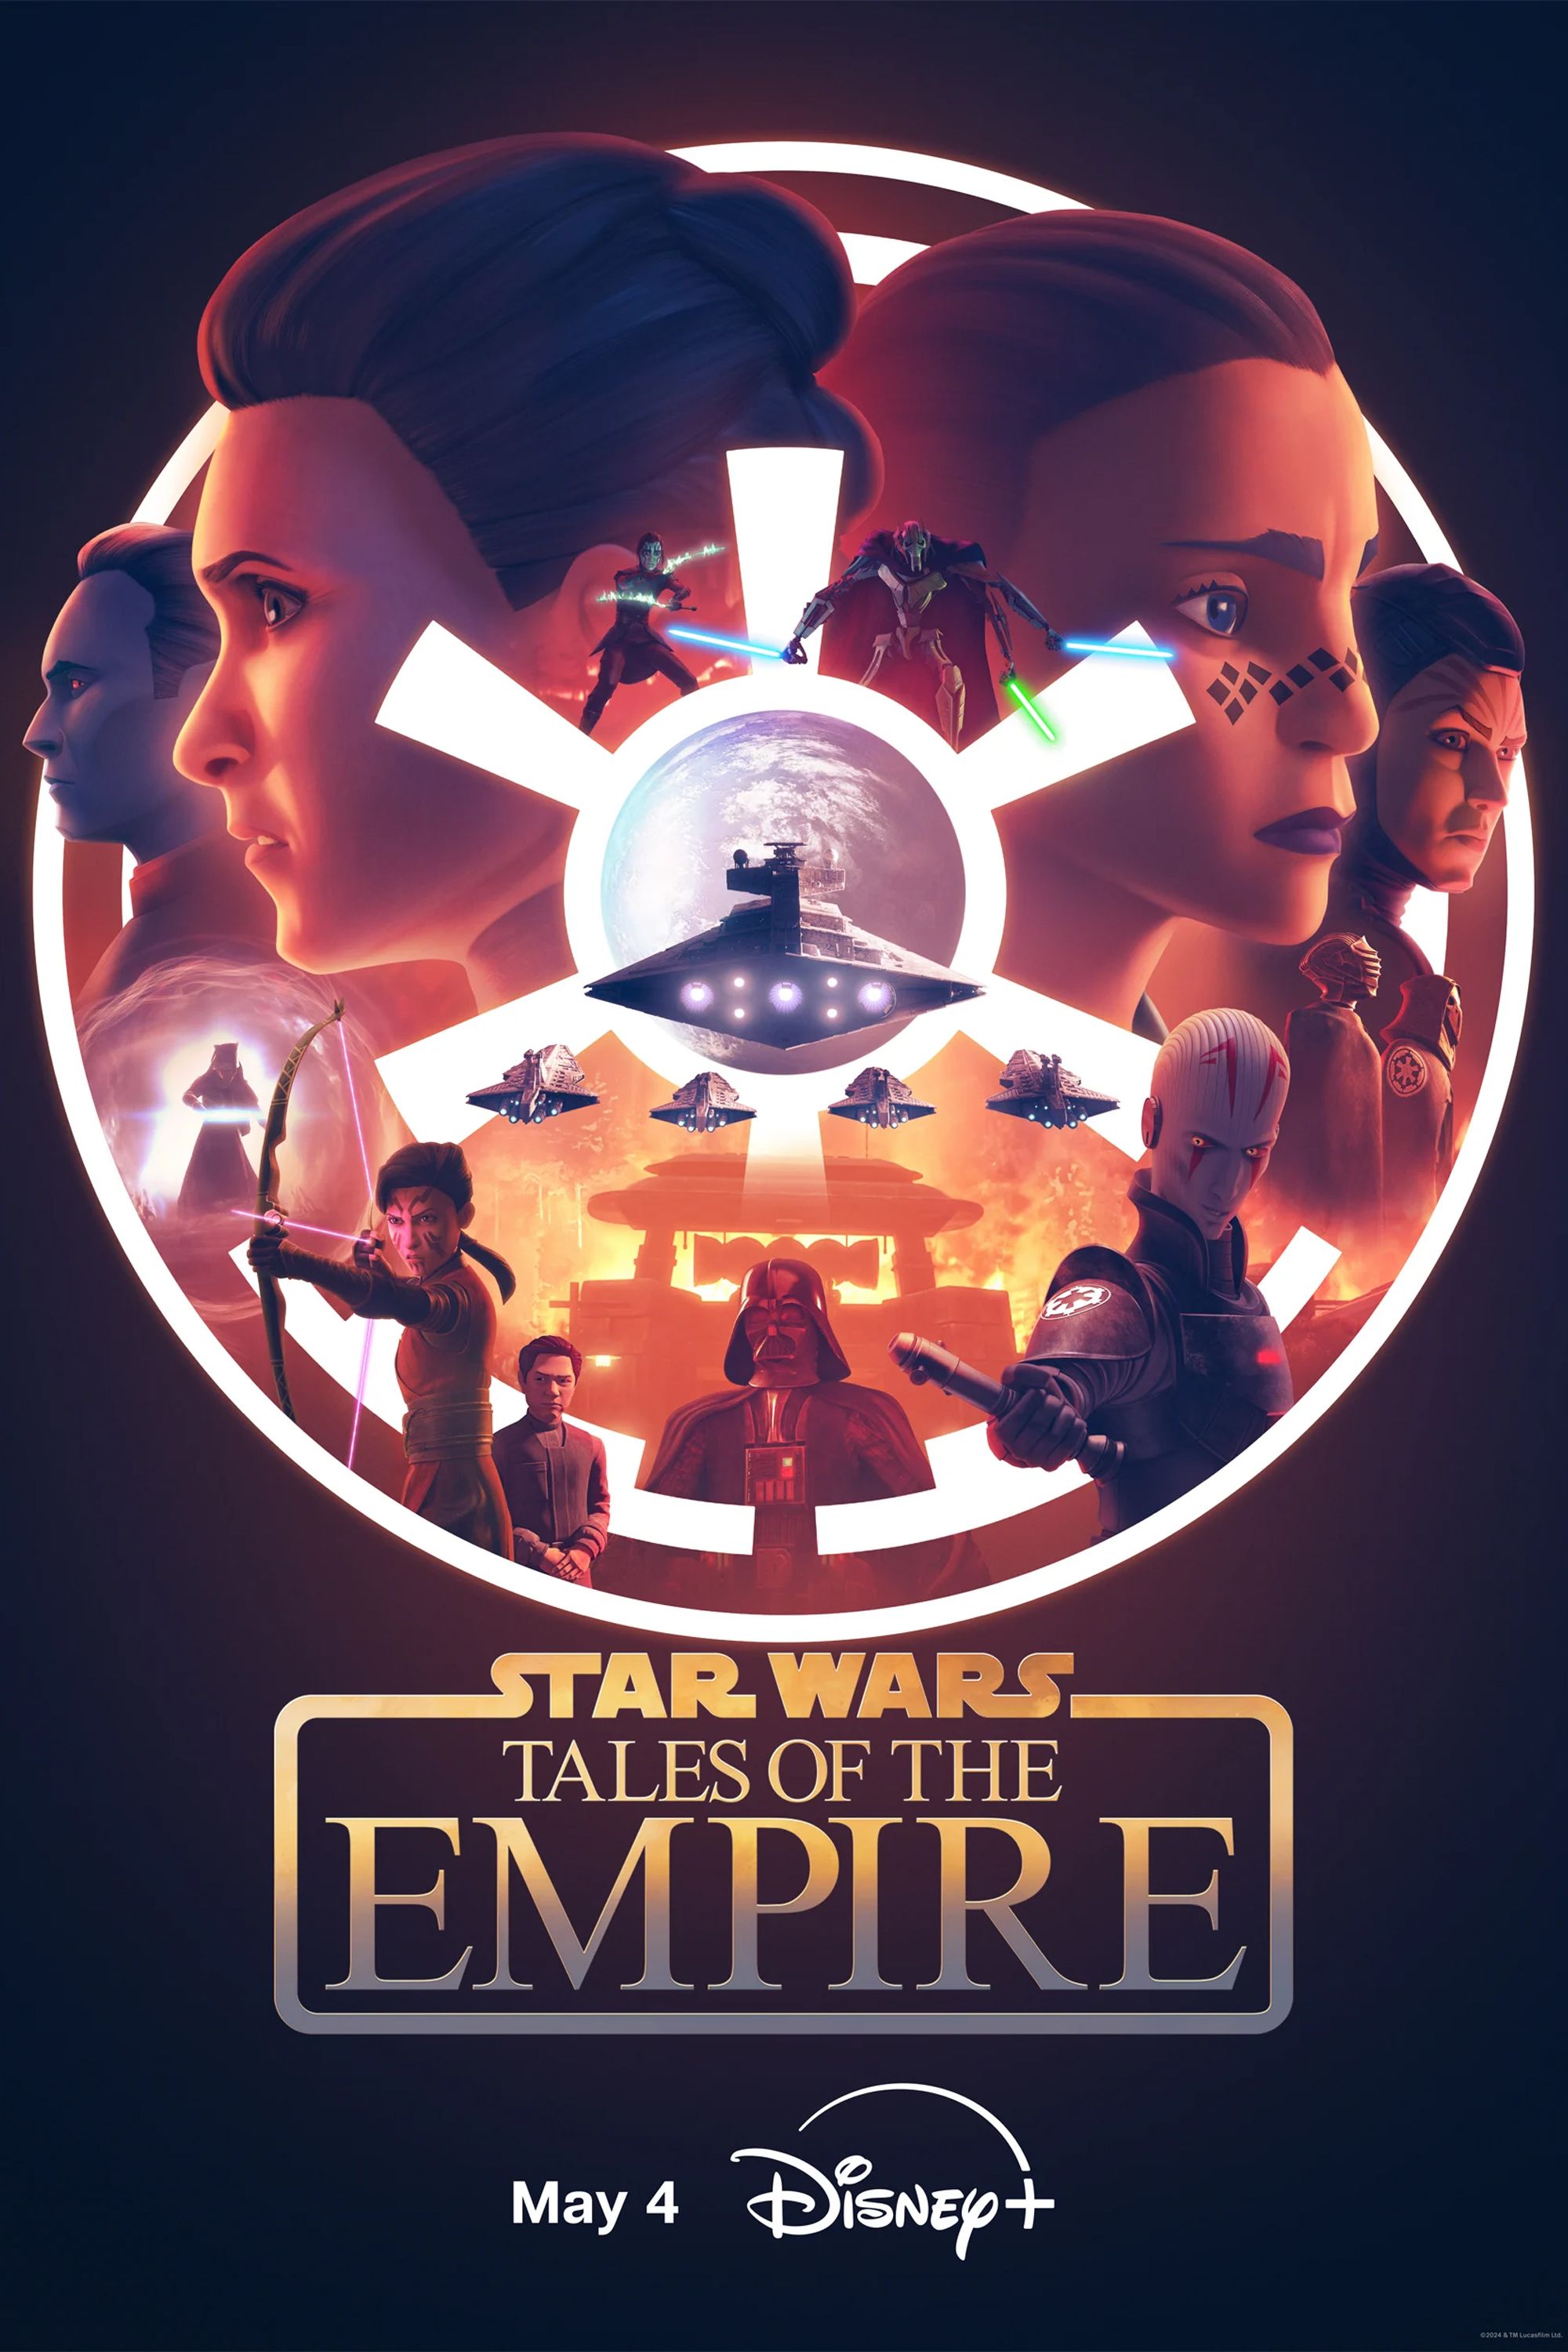 Pôster de Star Wars Tales of the Empire mostrando o Grande Almirante Thrawn, Ahsoka, Darth Vader, General Grievous e vários outros personagens dentro do logotipo imperial